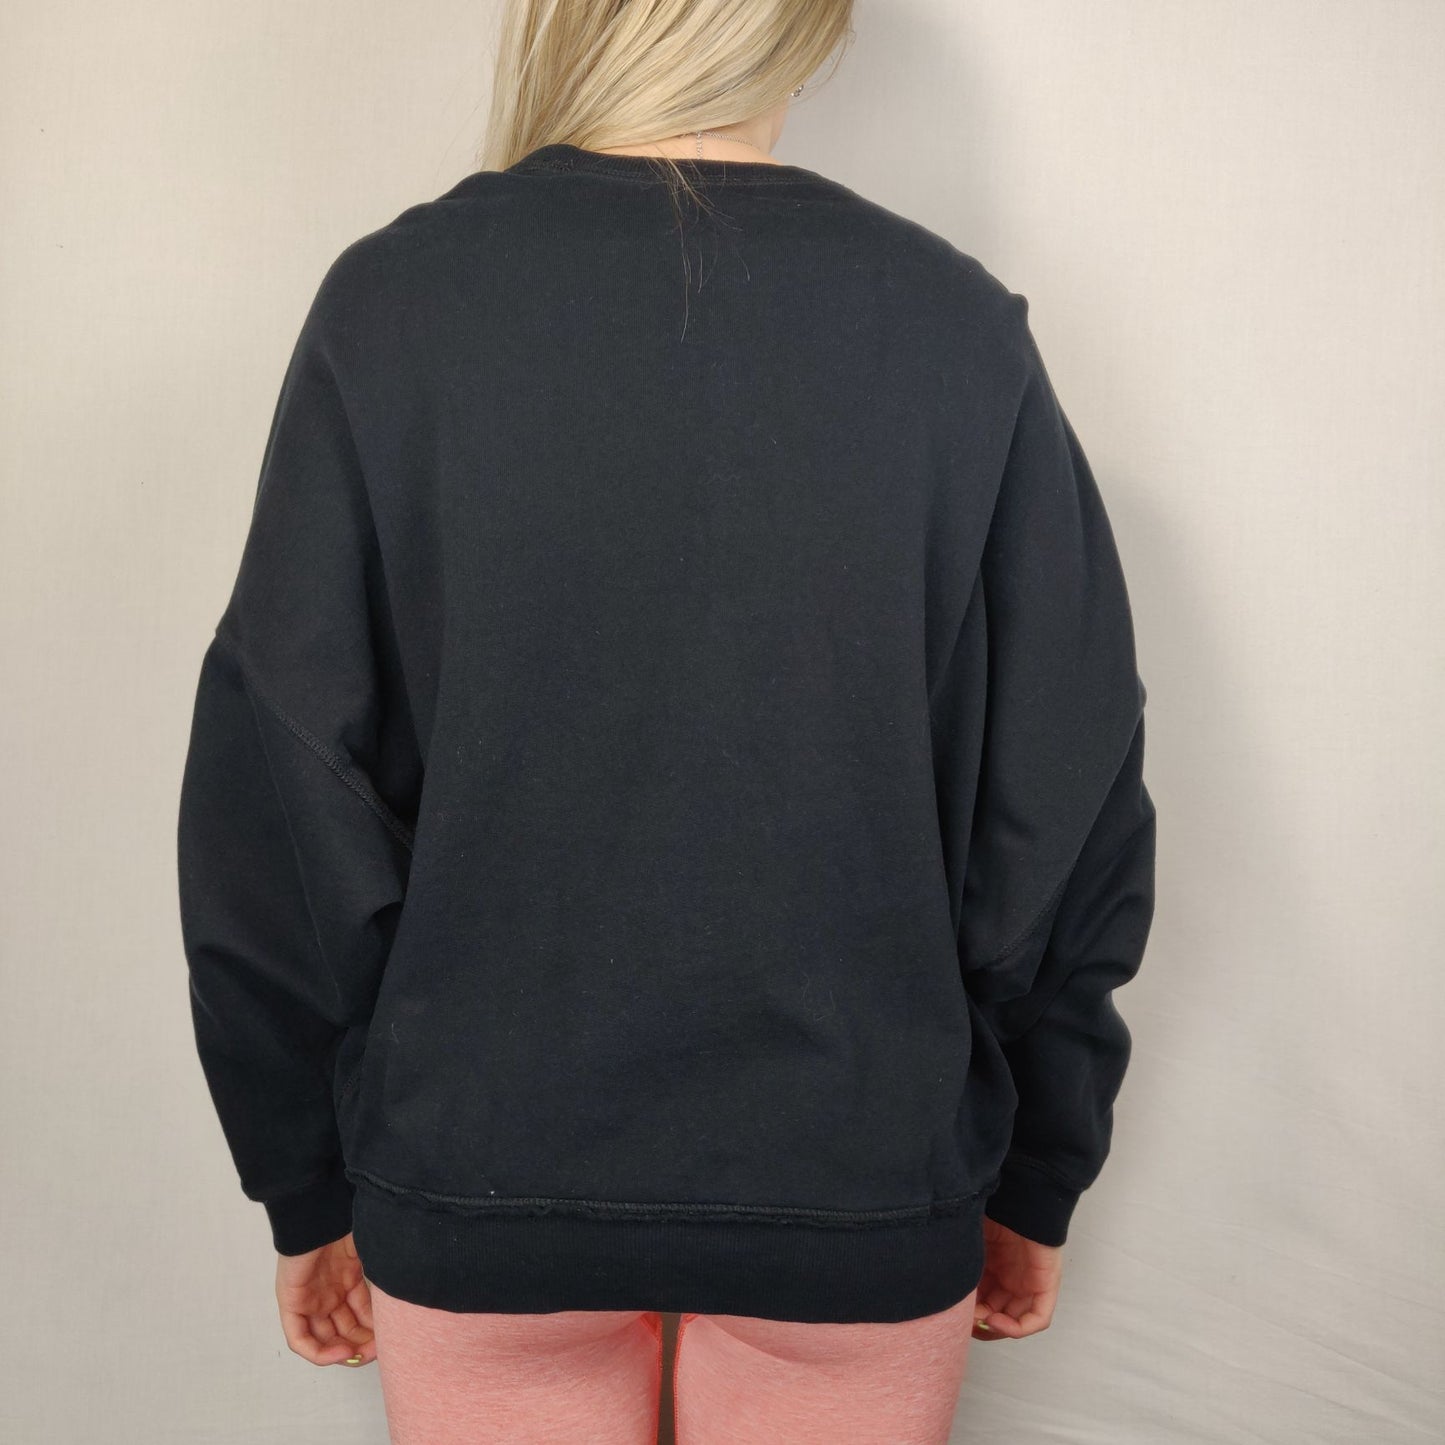 Diesel Black Sweatshirt Pullover Long Sleeve Women Size Medium/Large